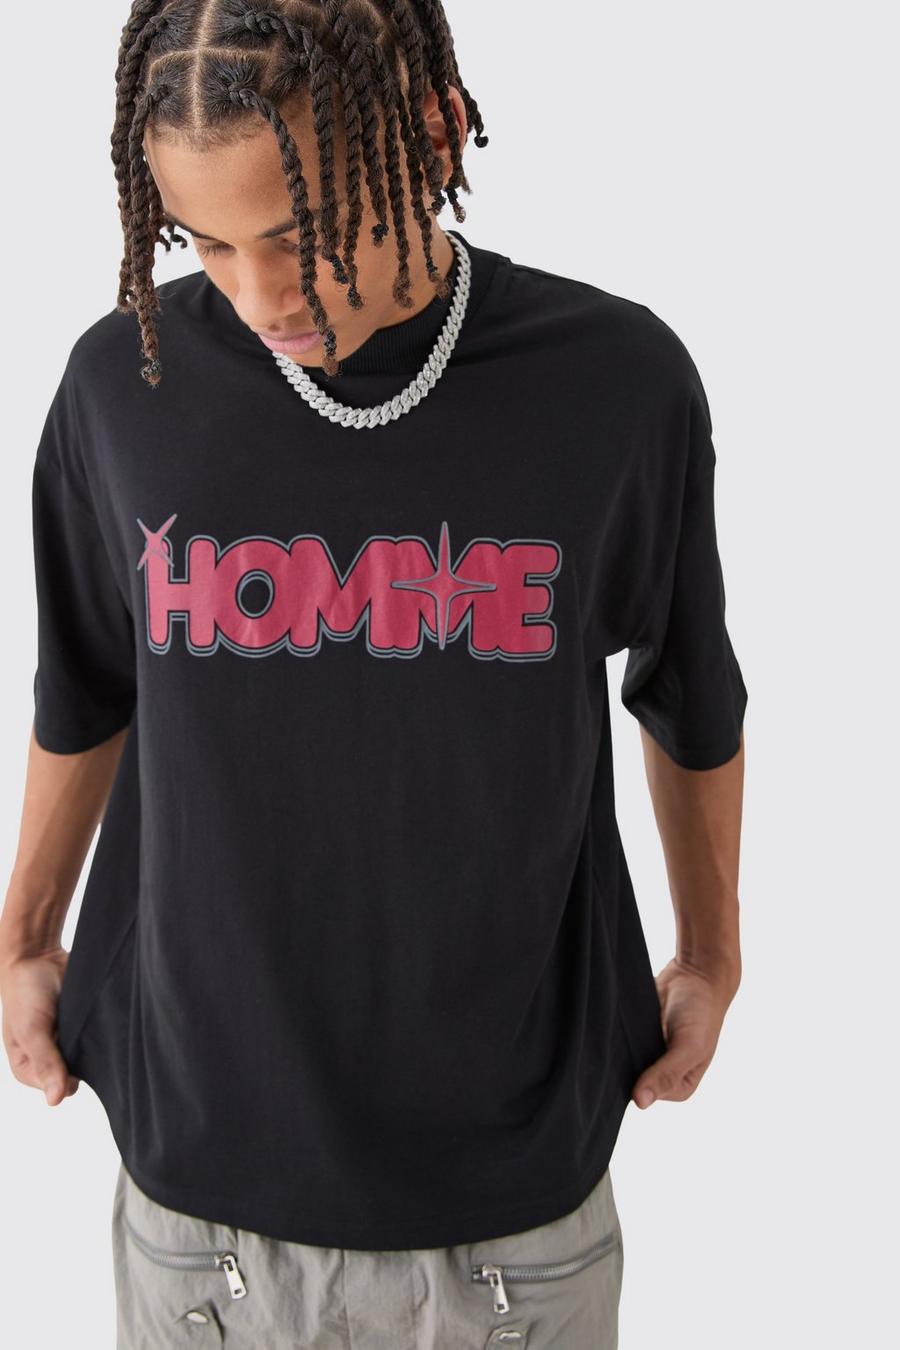 Camiseta oversize recta con estampado Homme de estrella, Black image number 1